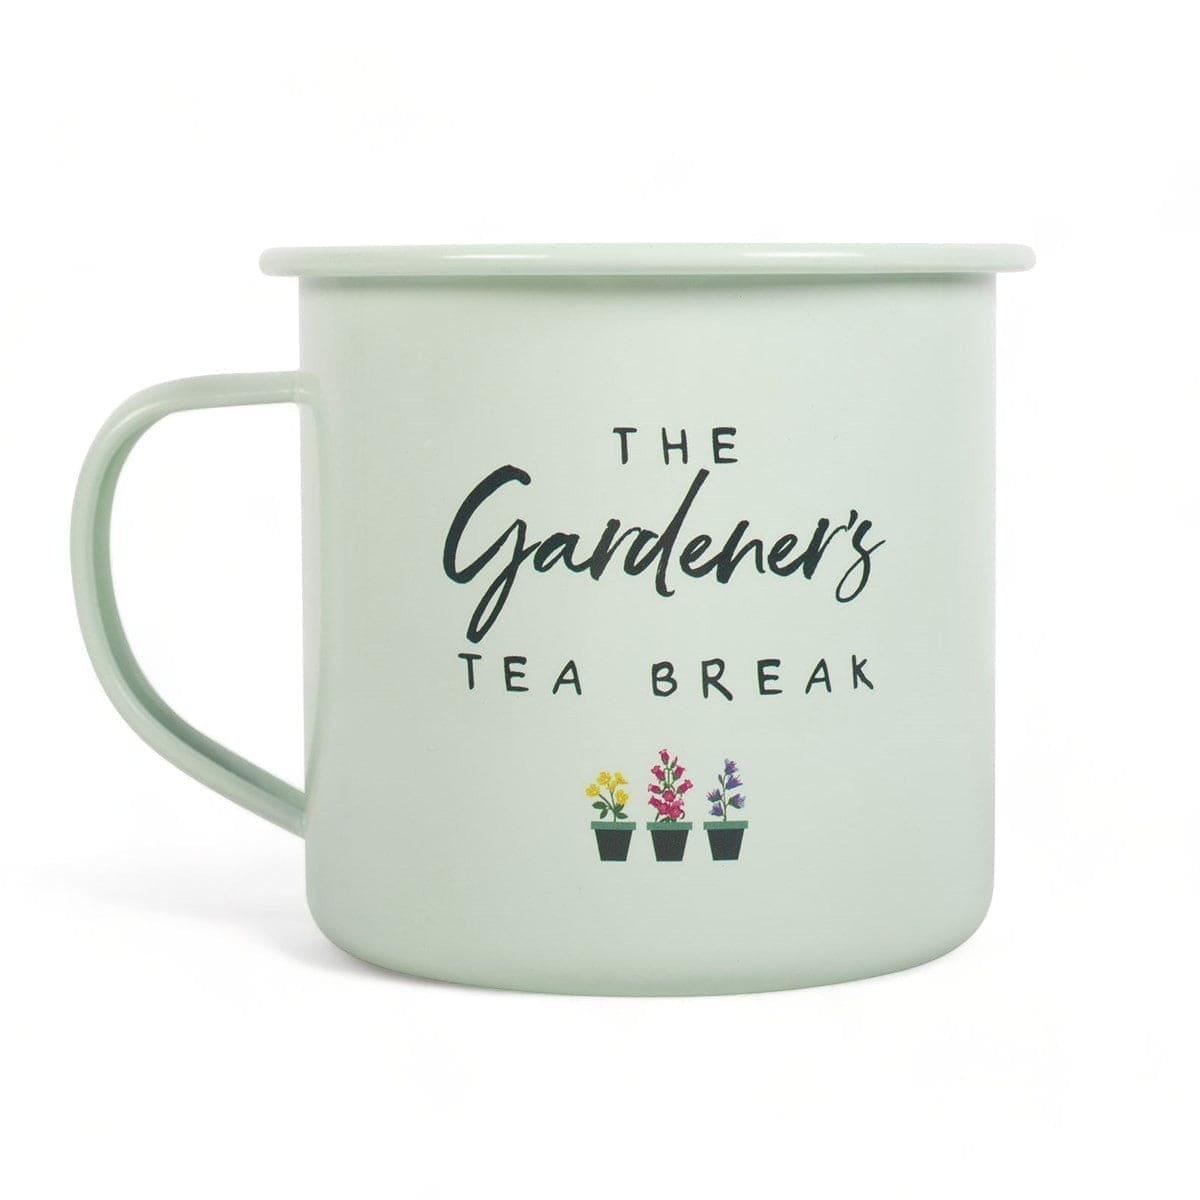 Gardener's Tea Break Enamel Mug - Gardener's Tea Break - Mugs and Cups by Jones Home & Gifts